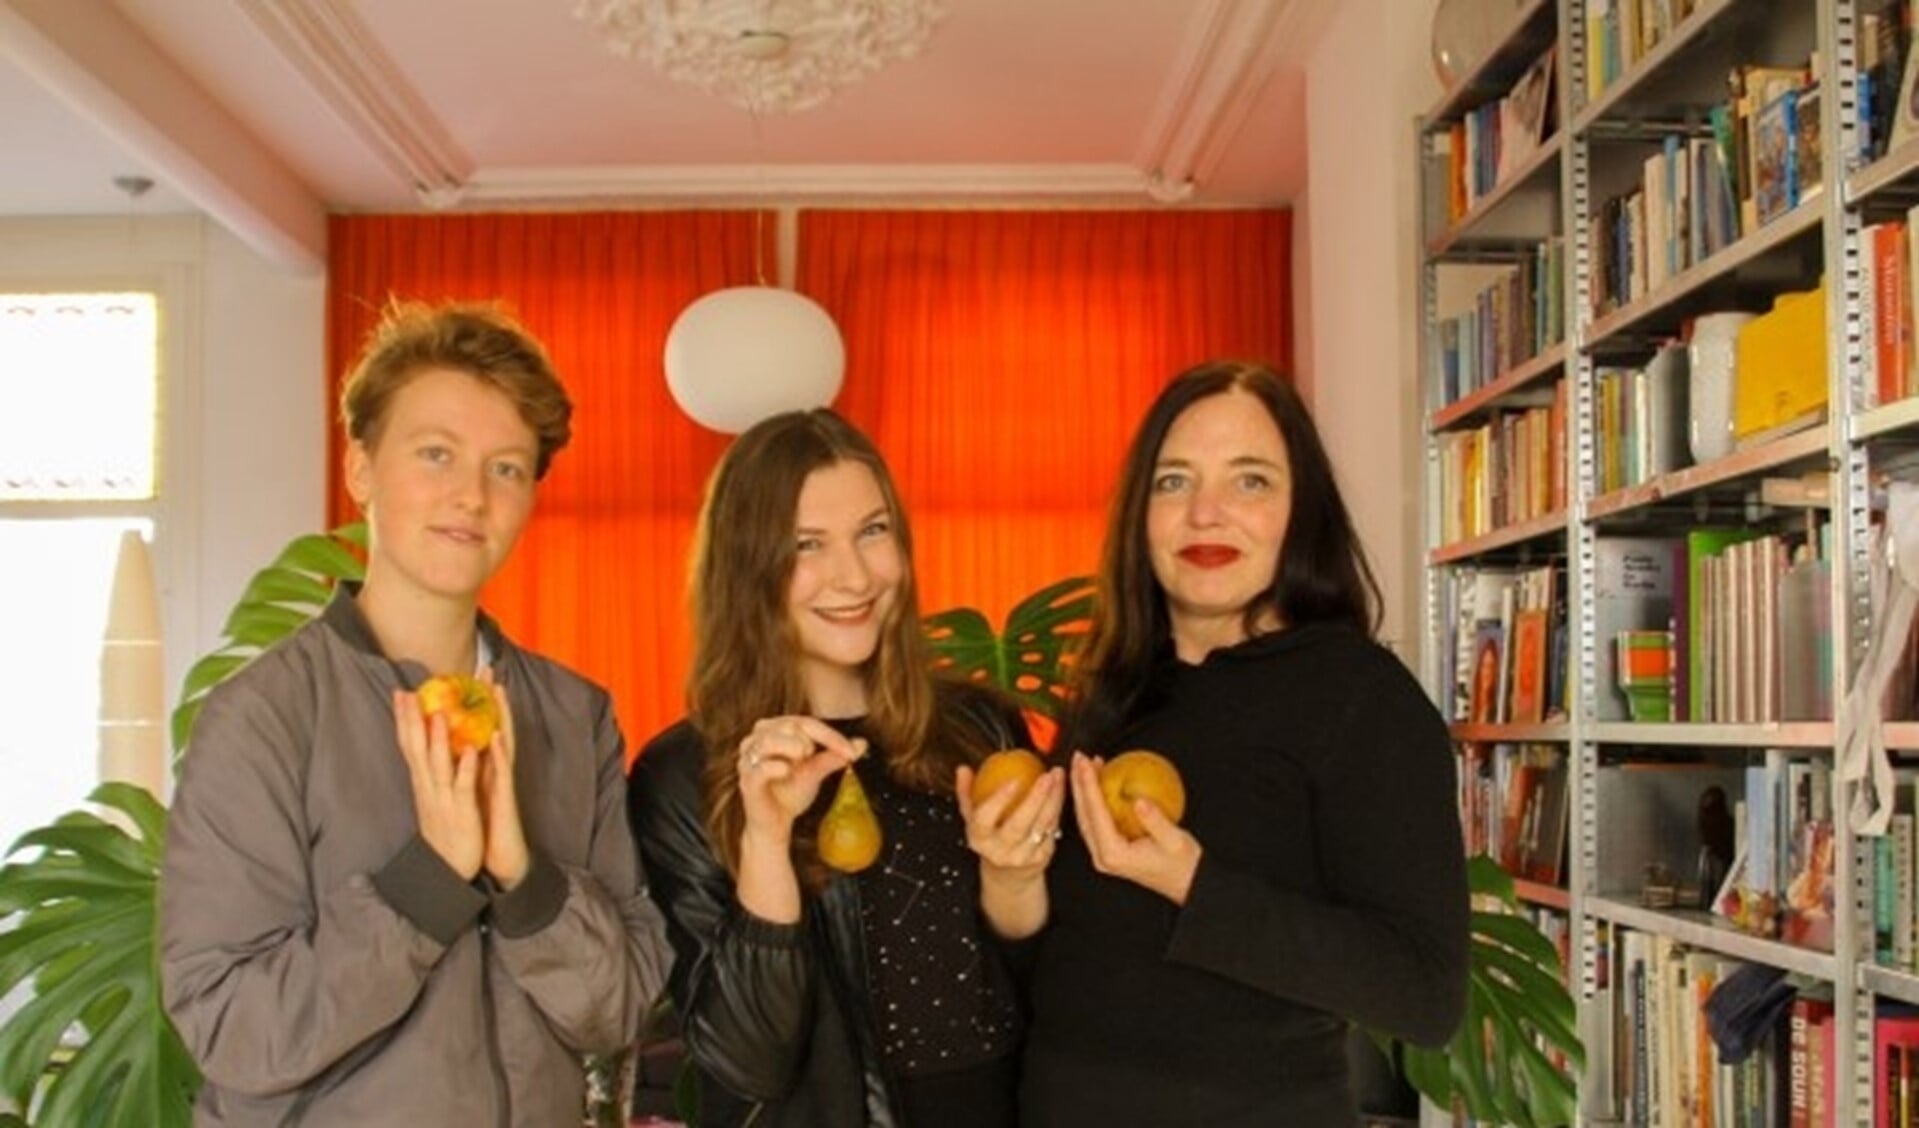 Sarah Stolk, Ella Roelfsema en Joke van Bilsen en Paula Zwitser (niet op de foto) willen verspilling van voedsel tegengaan.